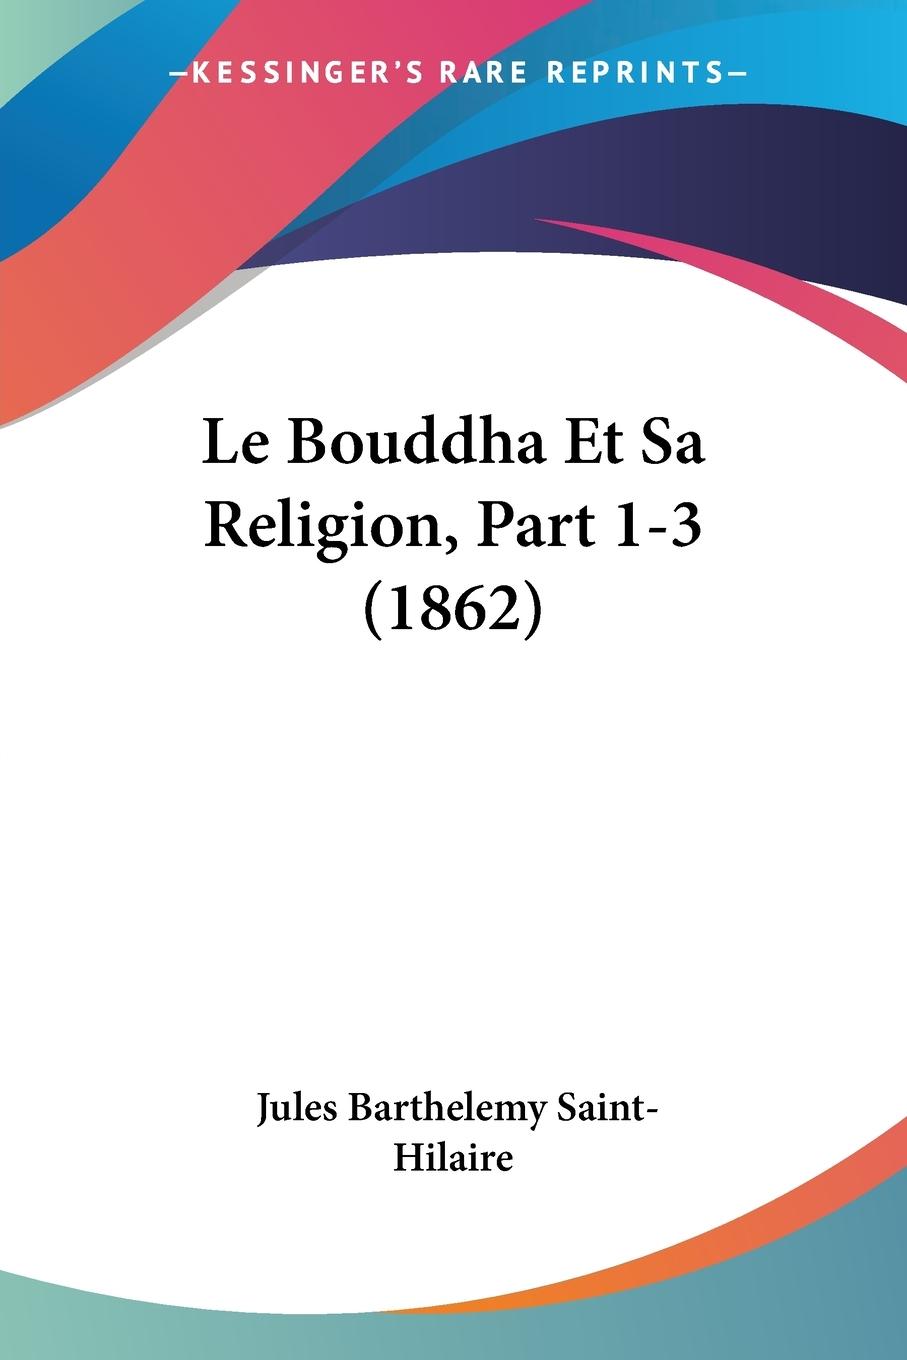 Le Bouddha Et Sa Religion, Part 1-3 (1862) - Saint-Hilaire, Jules Barthelemy